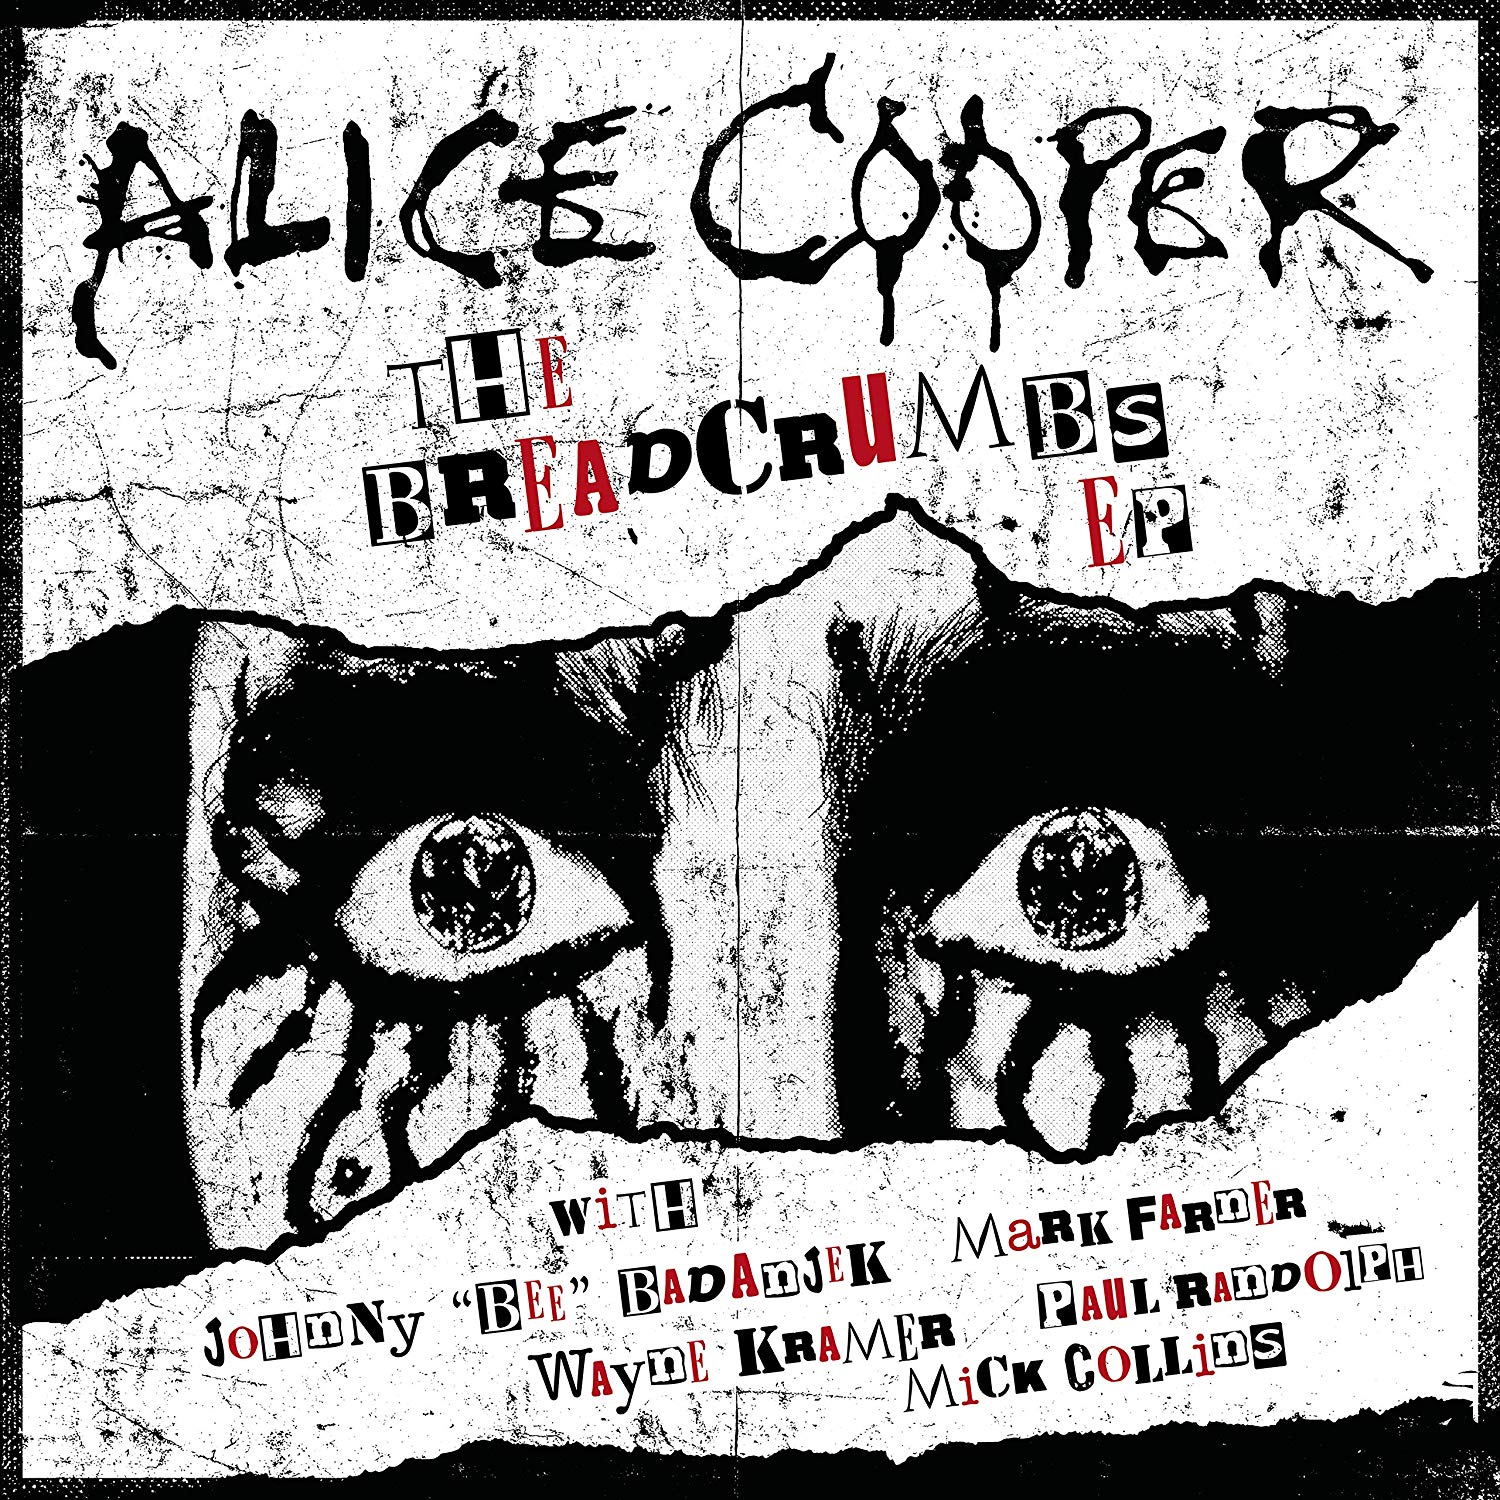 Alice_Cooper_-_2019_-_Breadcrumbs_(EP)